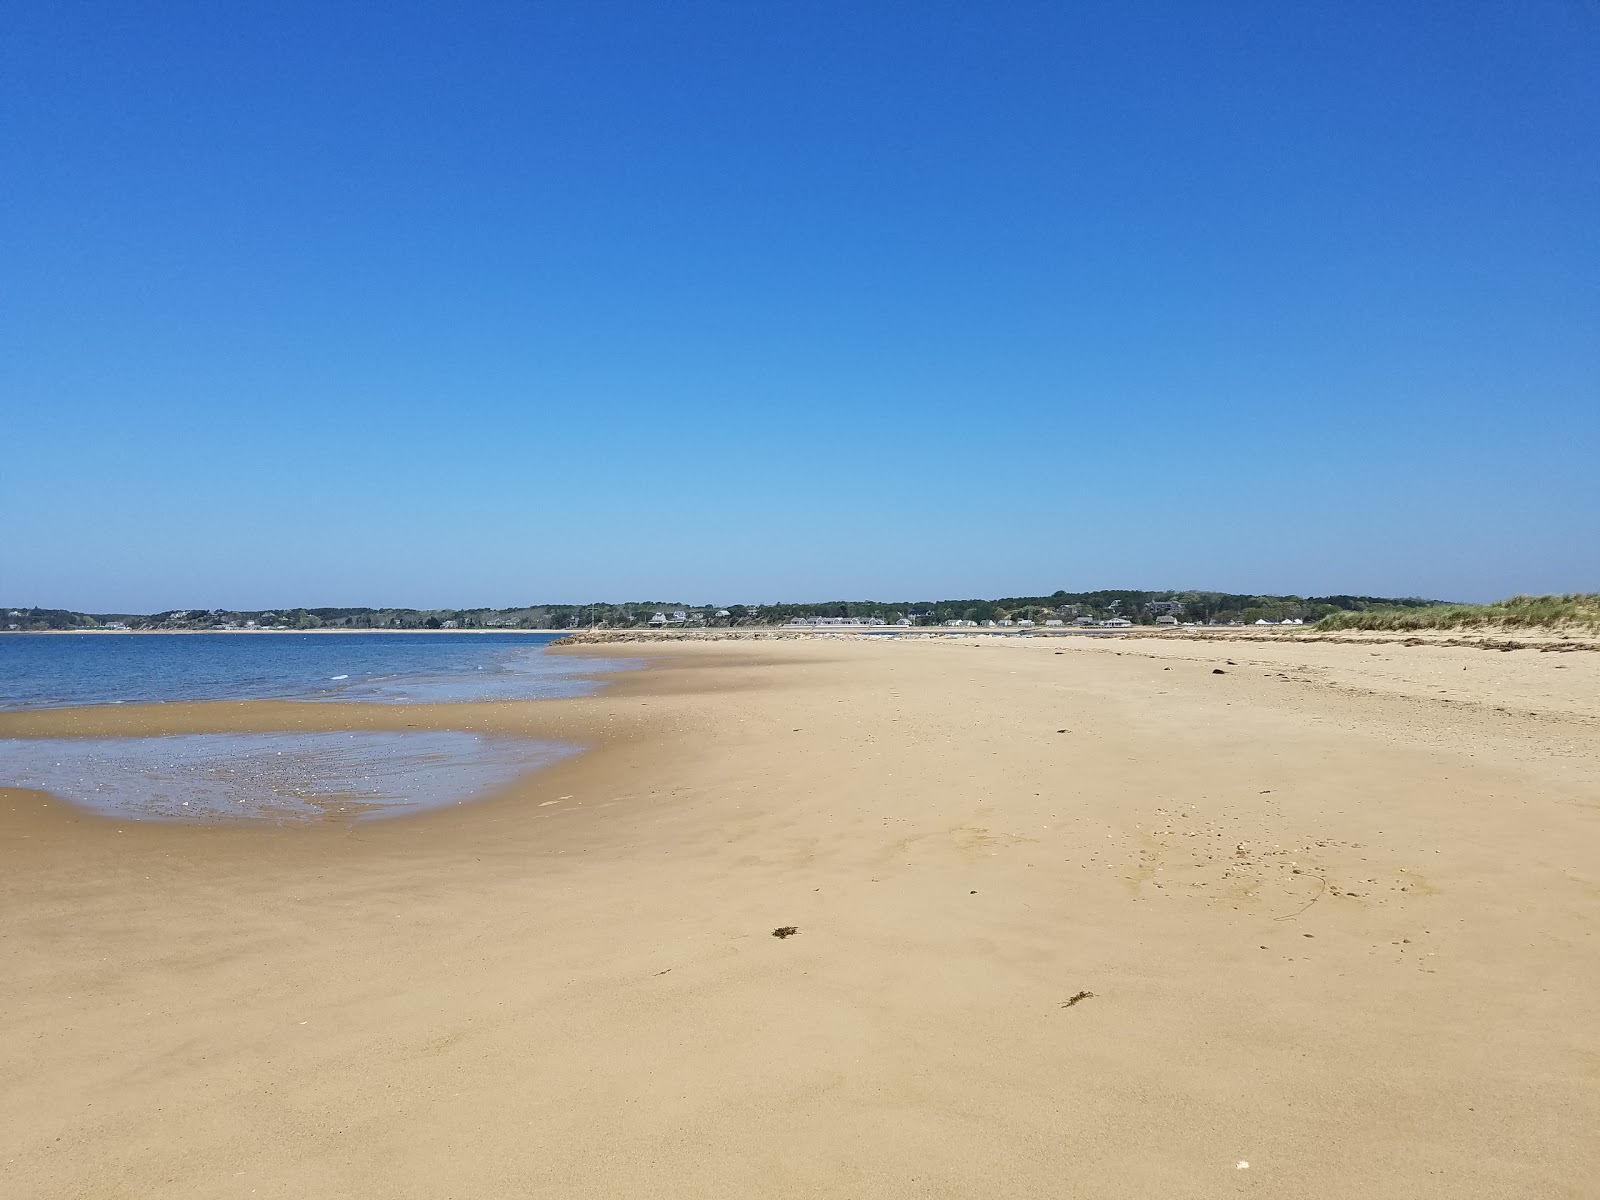 Zdjęcie Indian Neck beach z powierzchnią jasny piasek